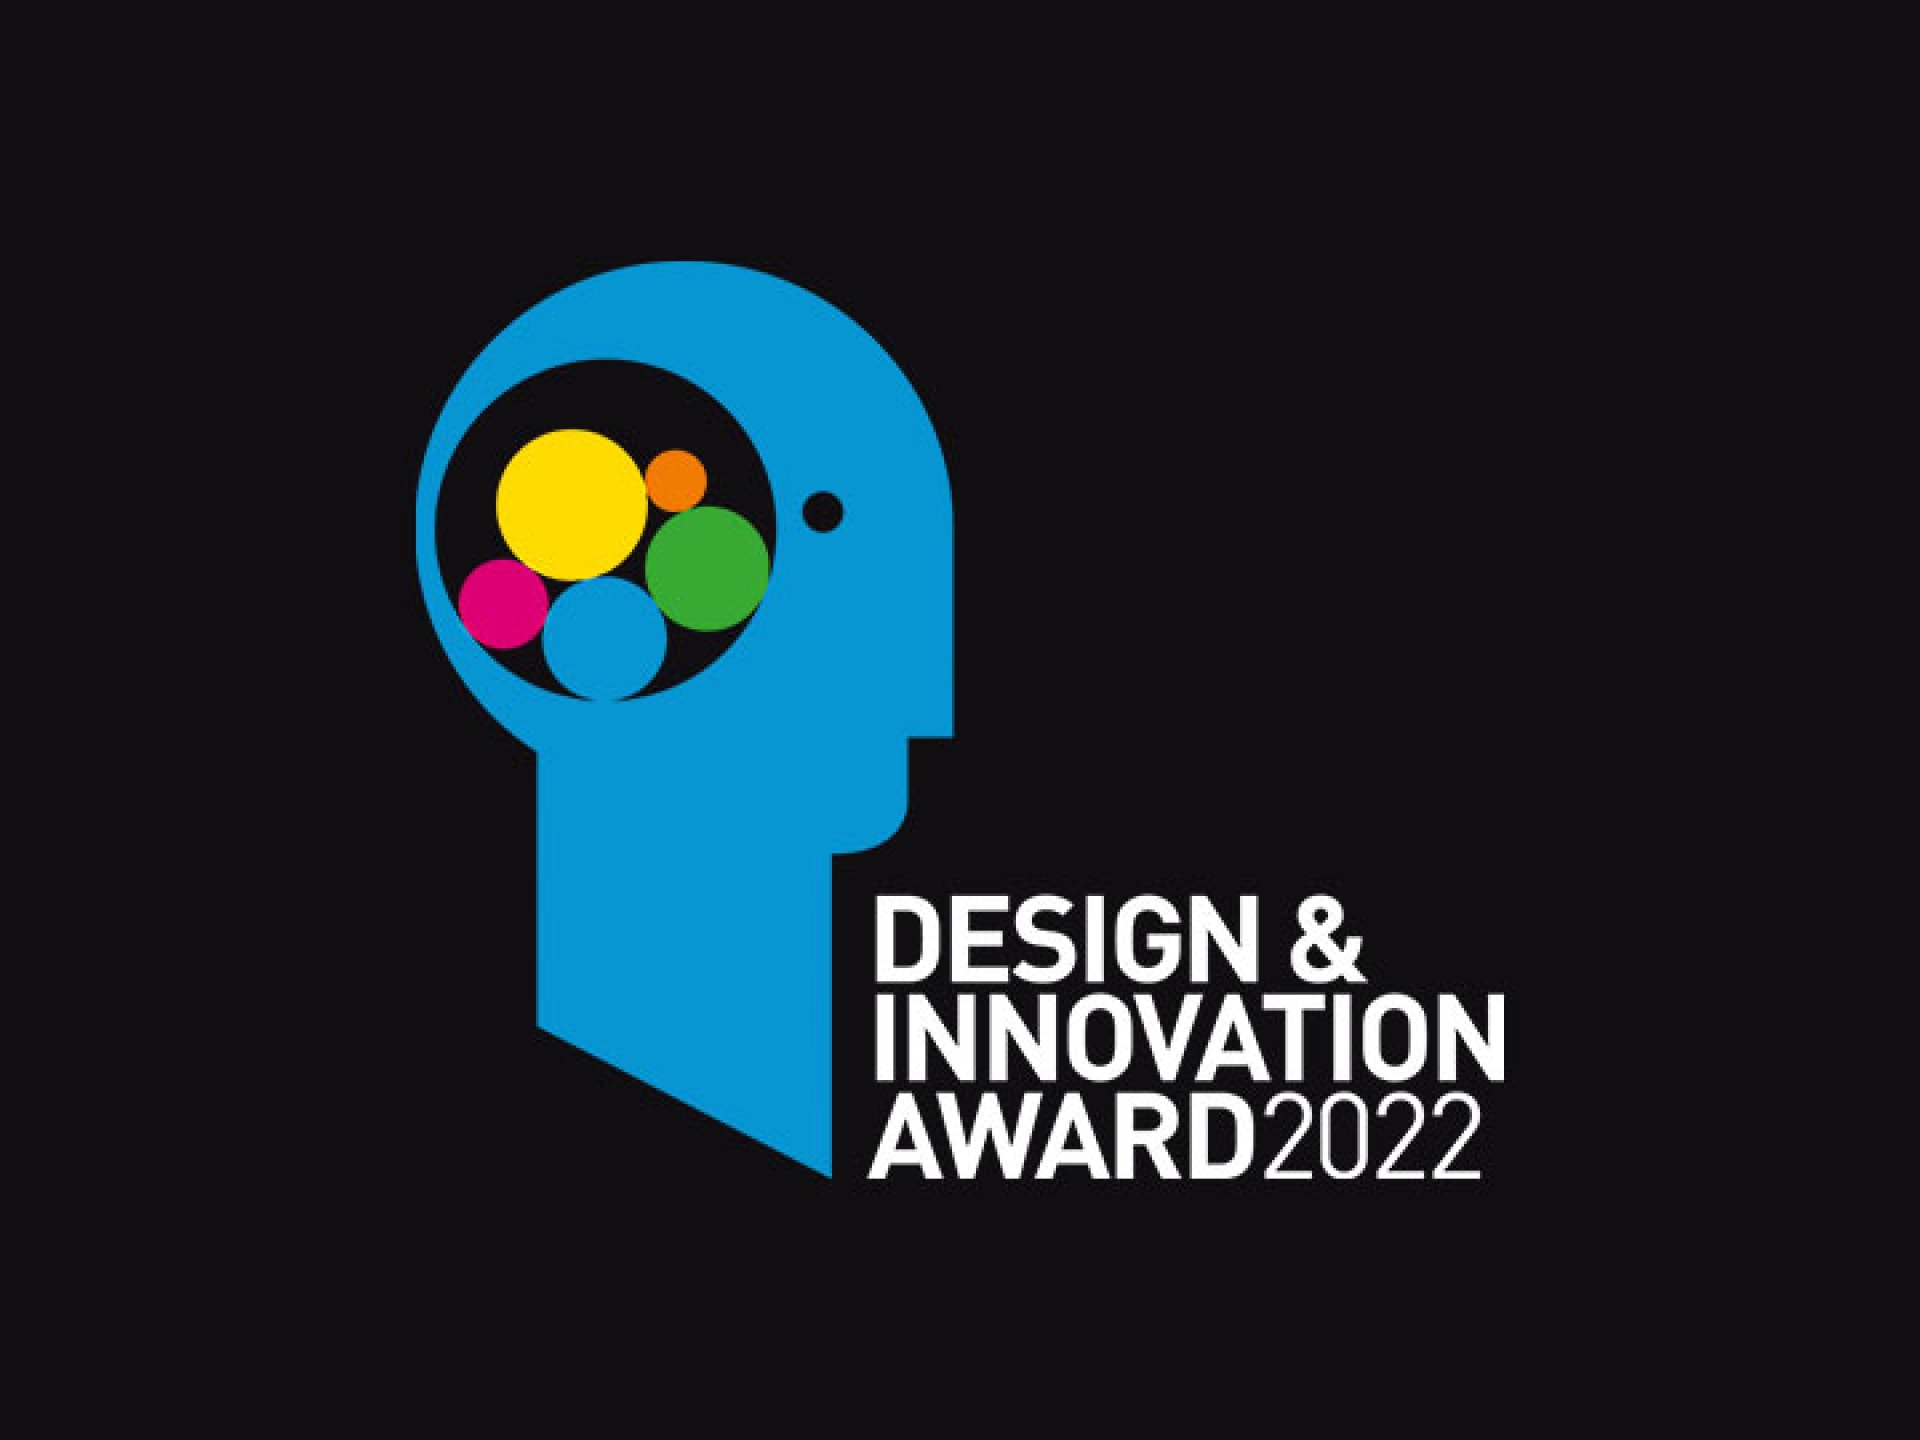 Design & Innovation Award 2022